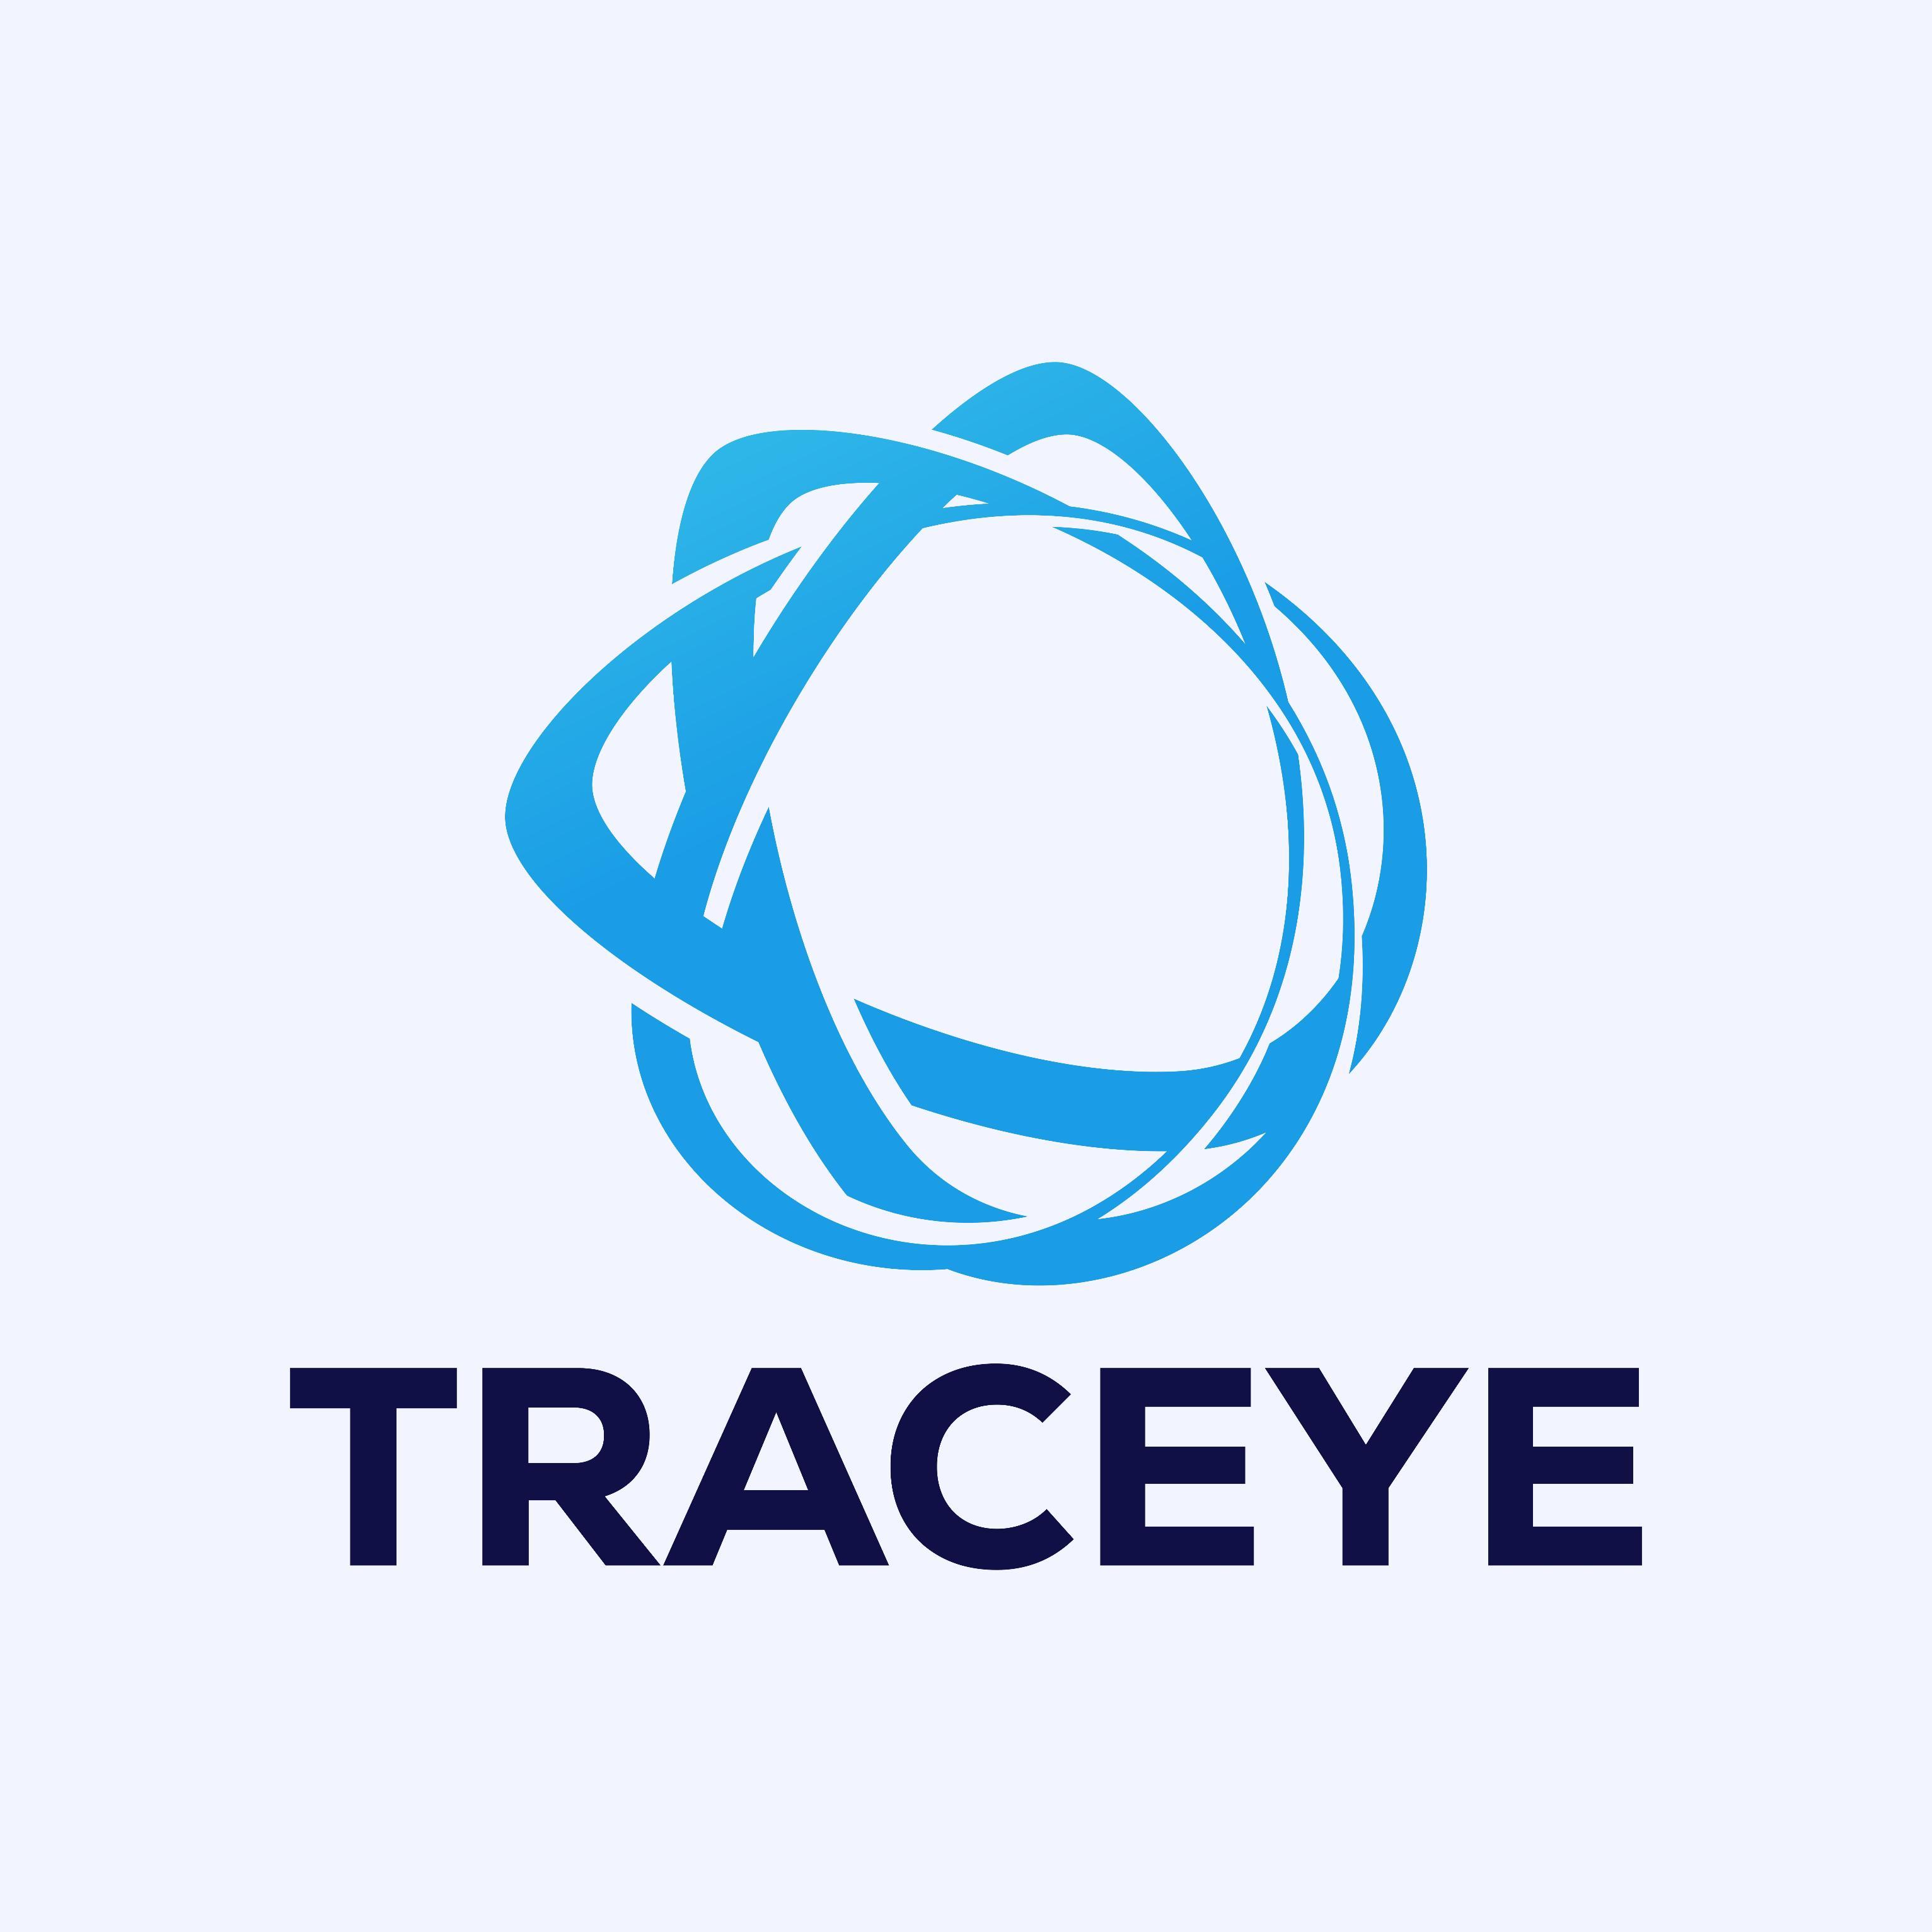 UseCase: Traceye